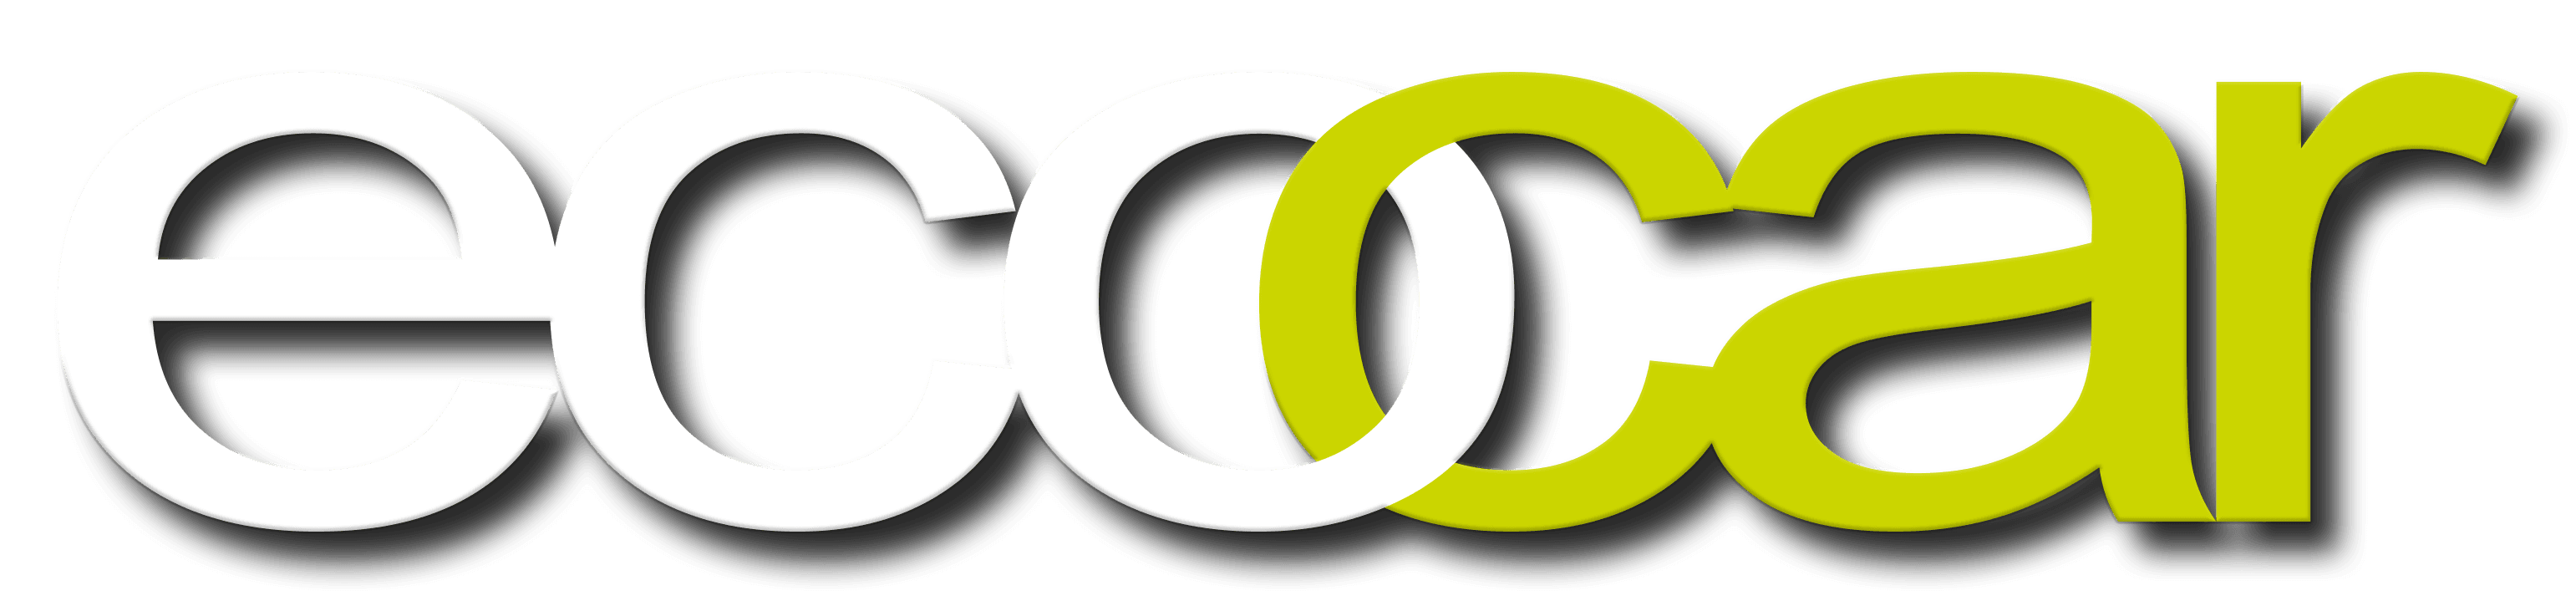 ecocar logo white